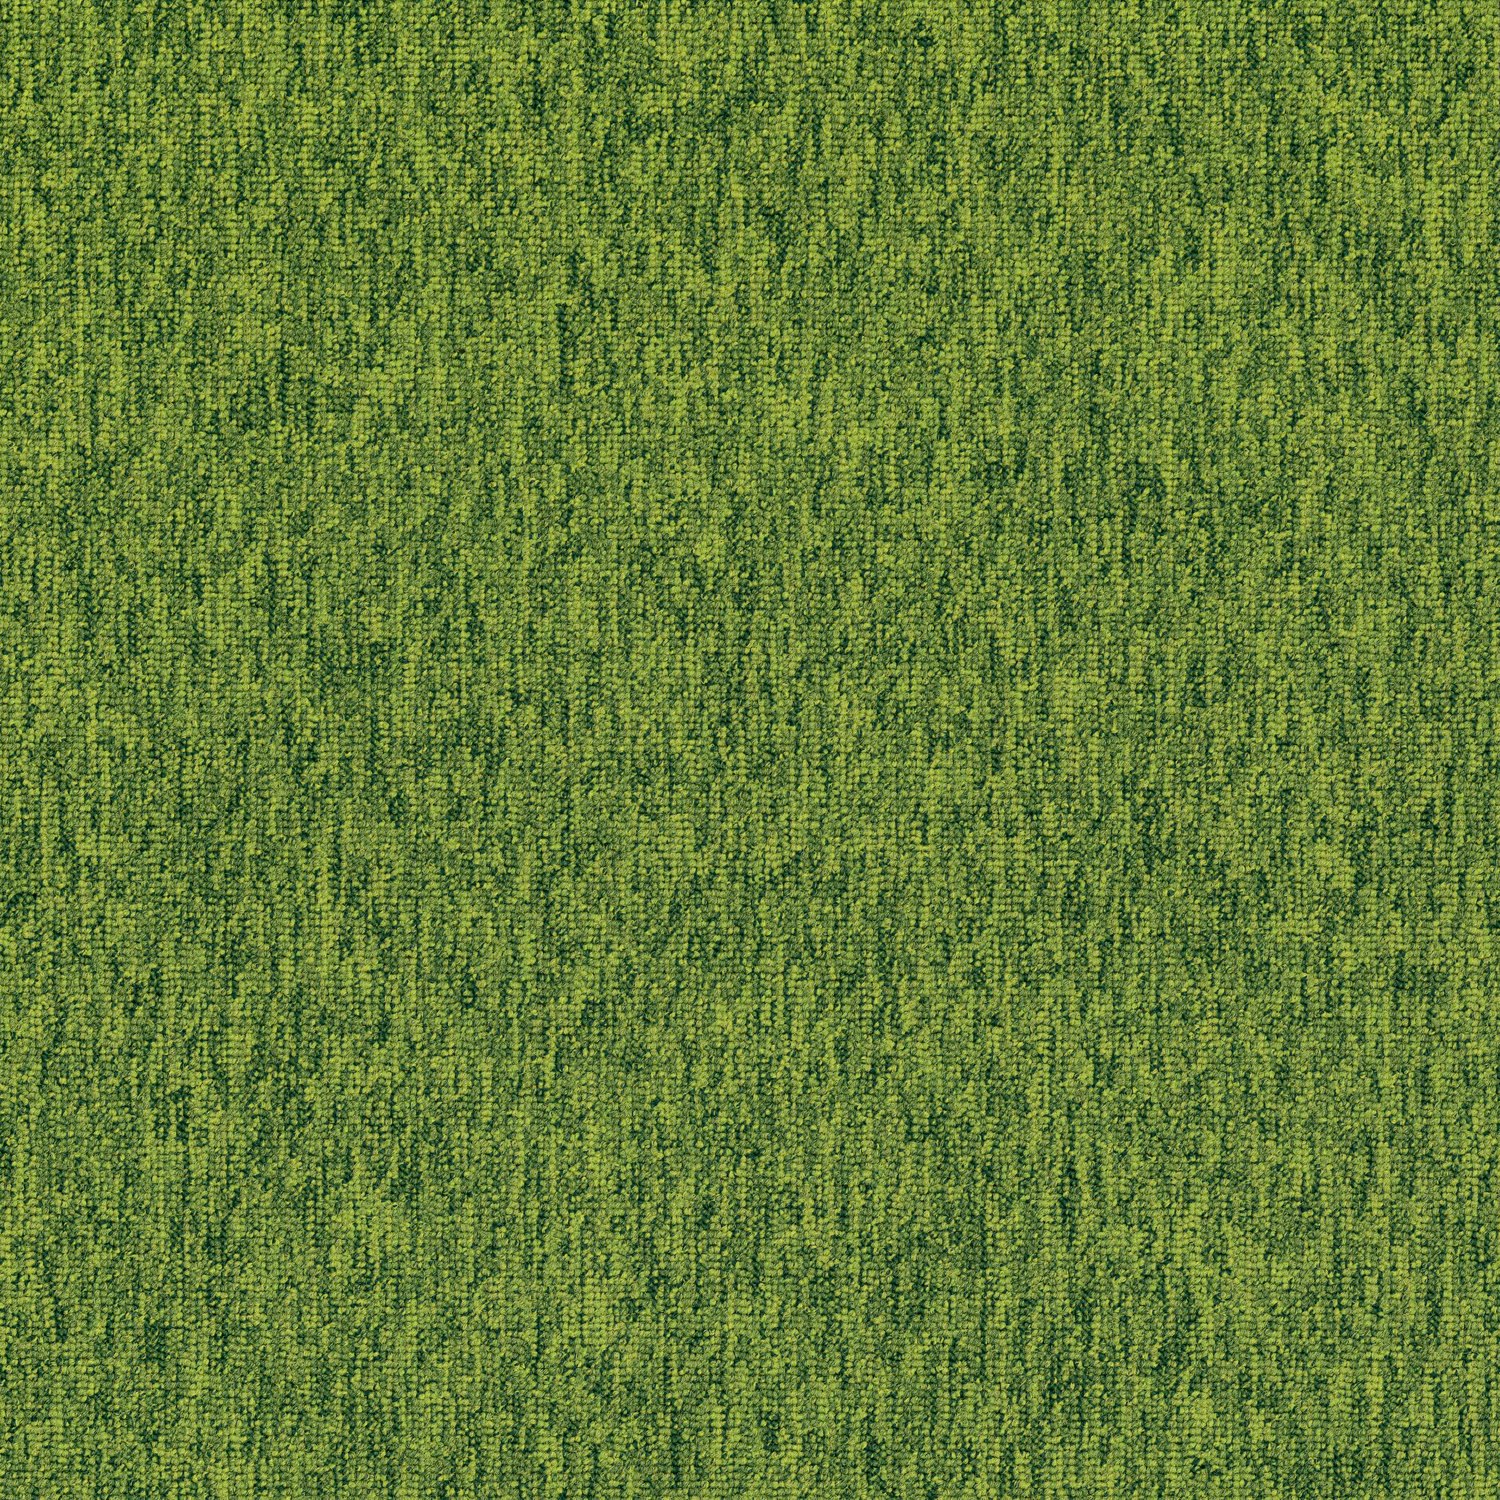 текстура травы гта 5 фото 30